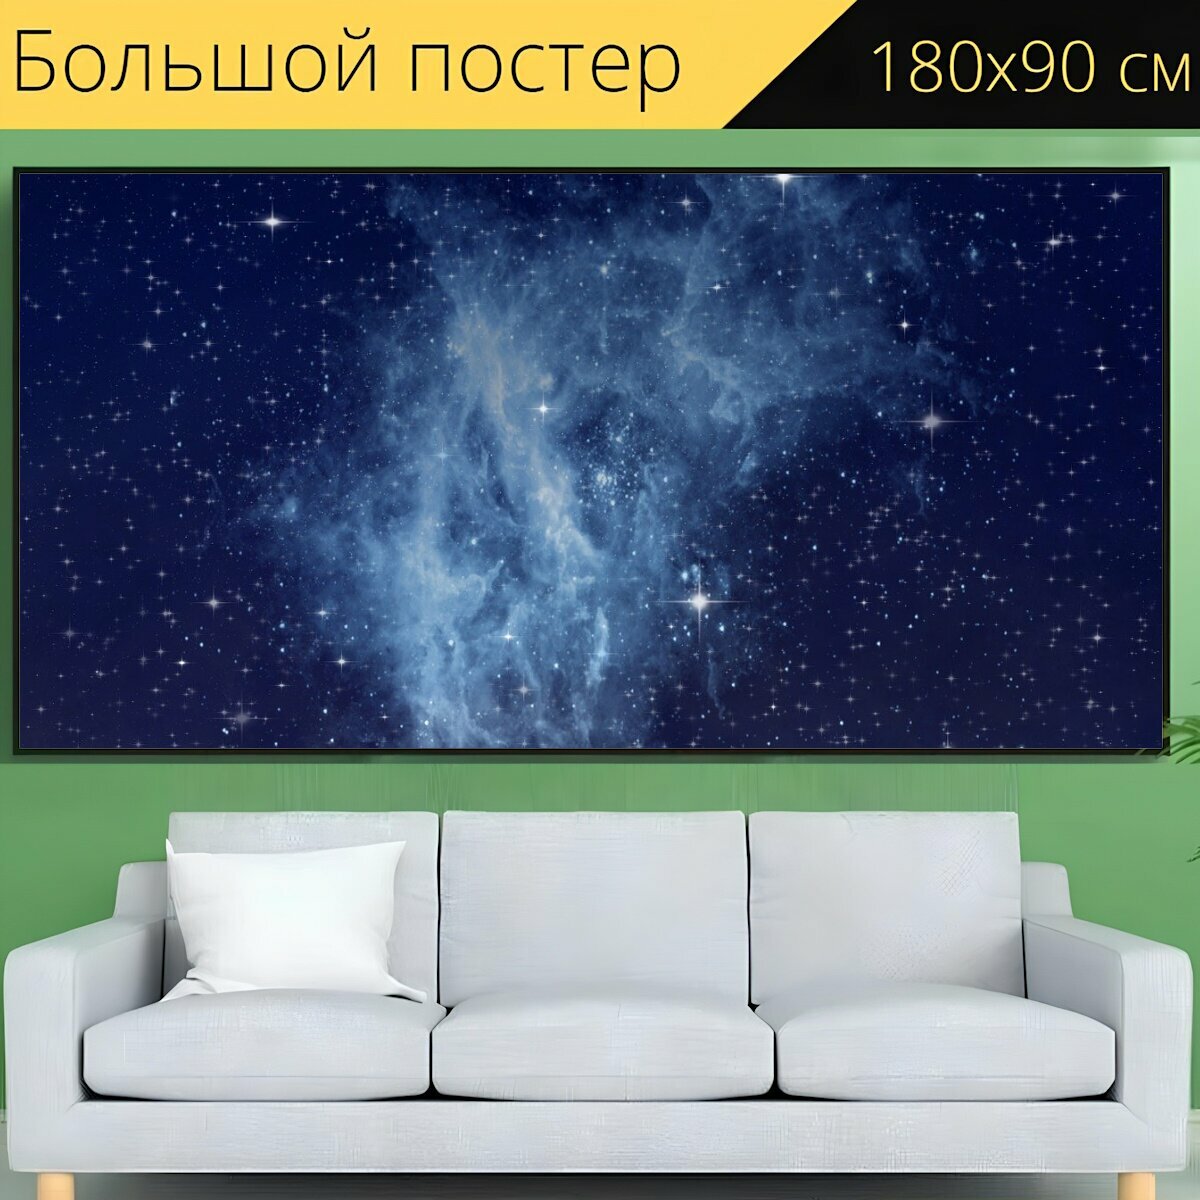 Большой постер "Галактика, звездное небо, ночное небо" 180 x 90 см. для интерьера